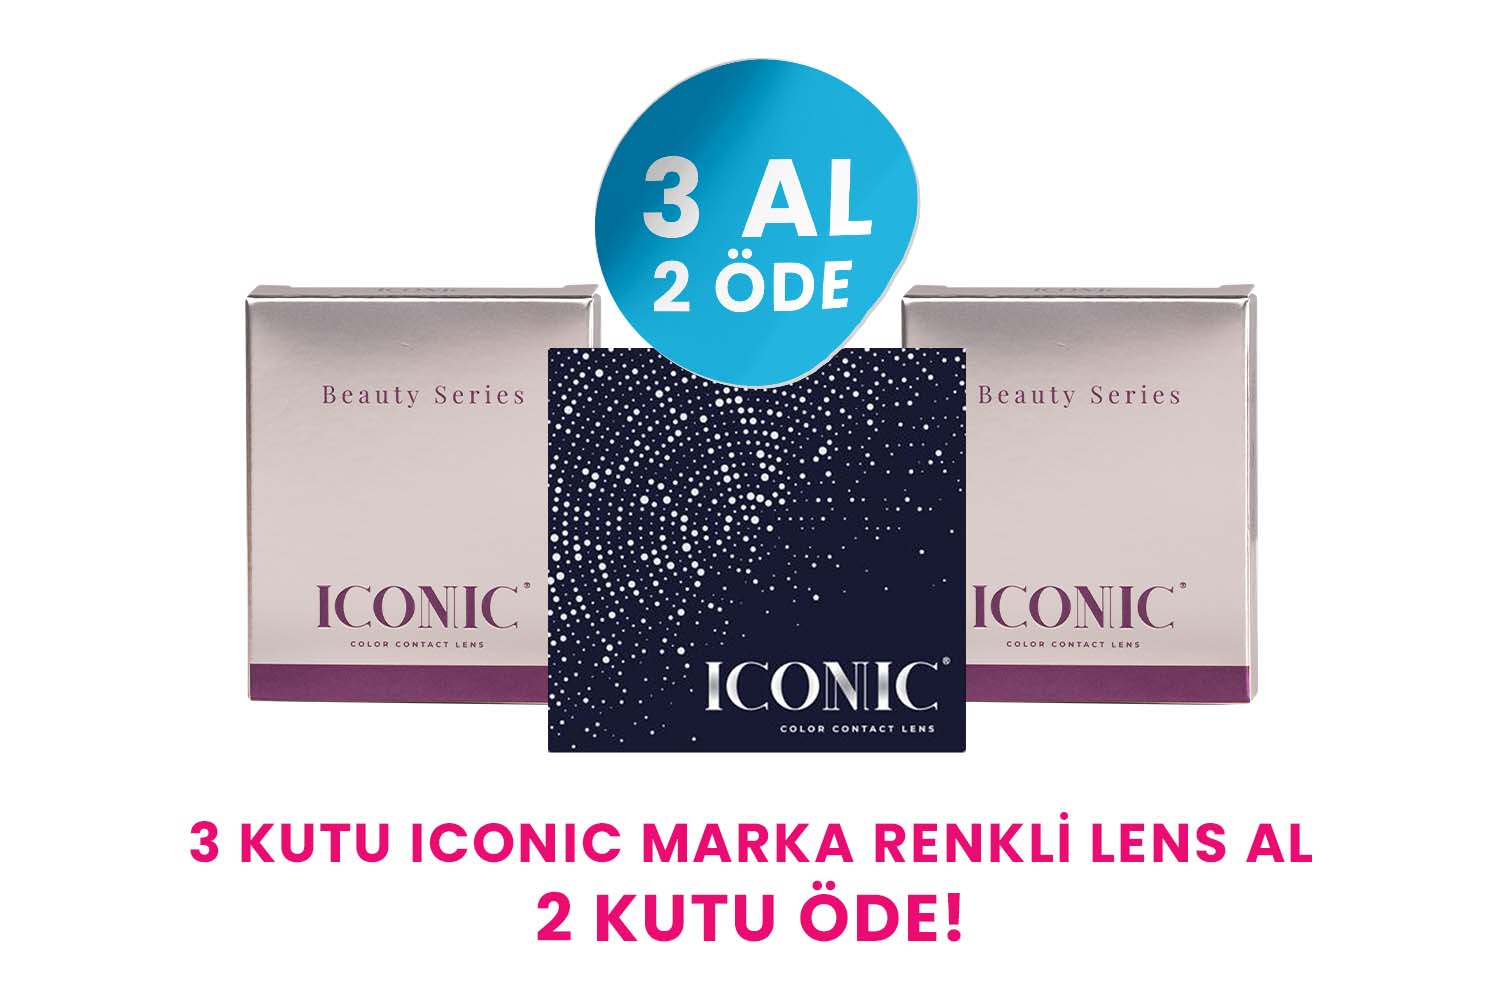 Iconic 3 Al 2 Öde Iconic Marka Herhangi Bir Ürün %99 İndirimli.